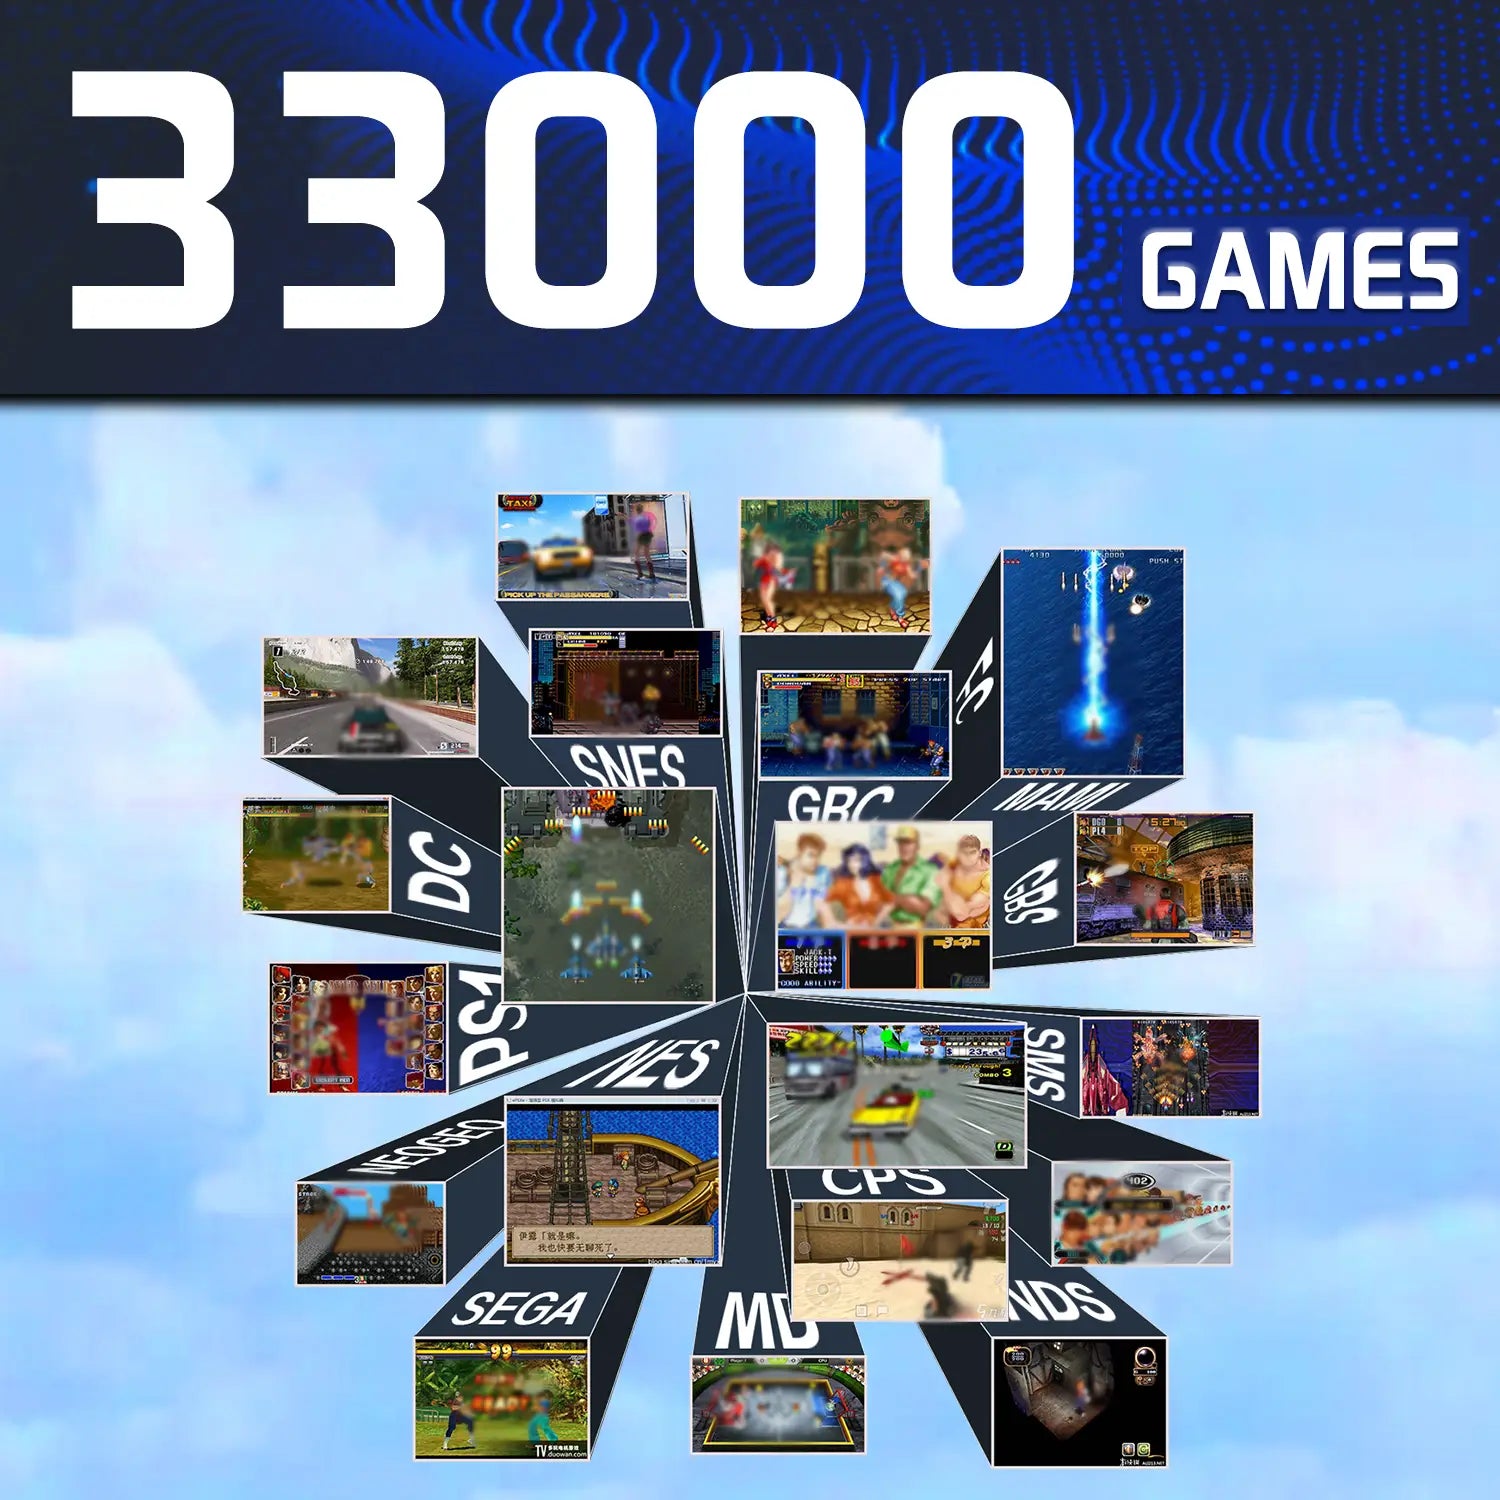 Console de jeu vidéo 4K avec émulateur 33000 Jeux